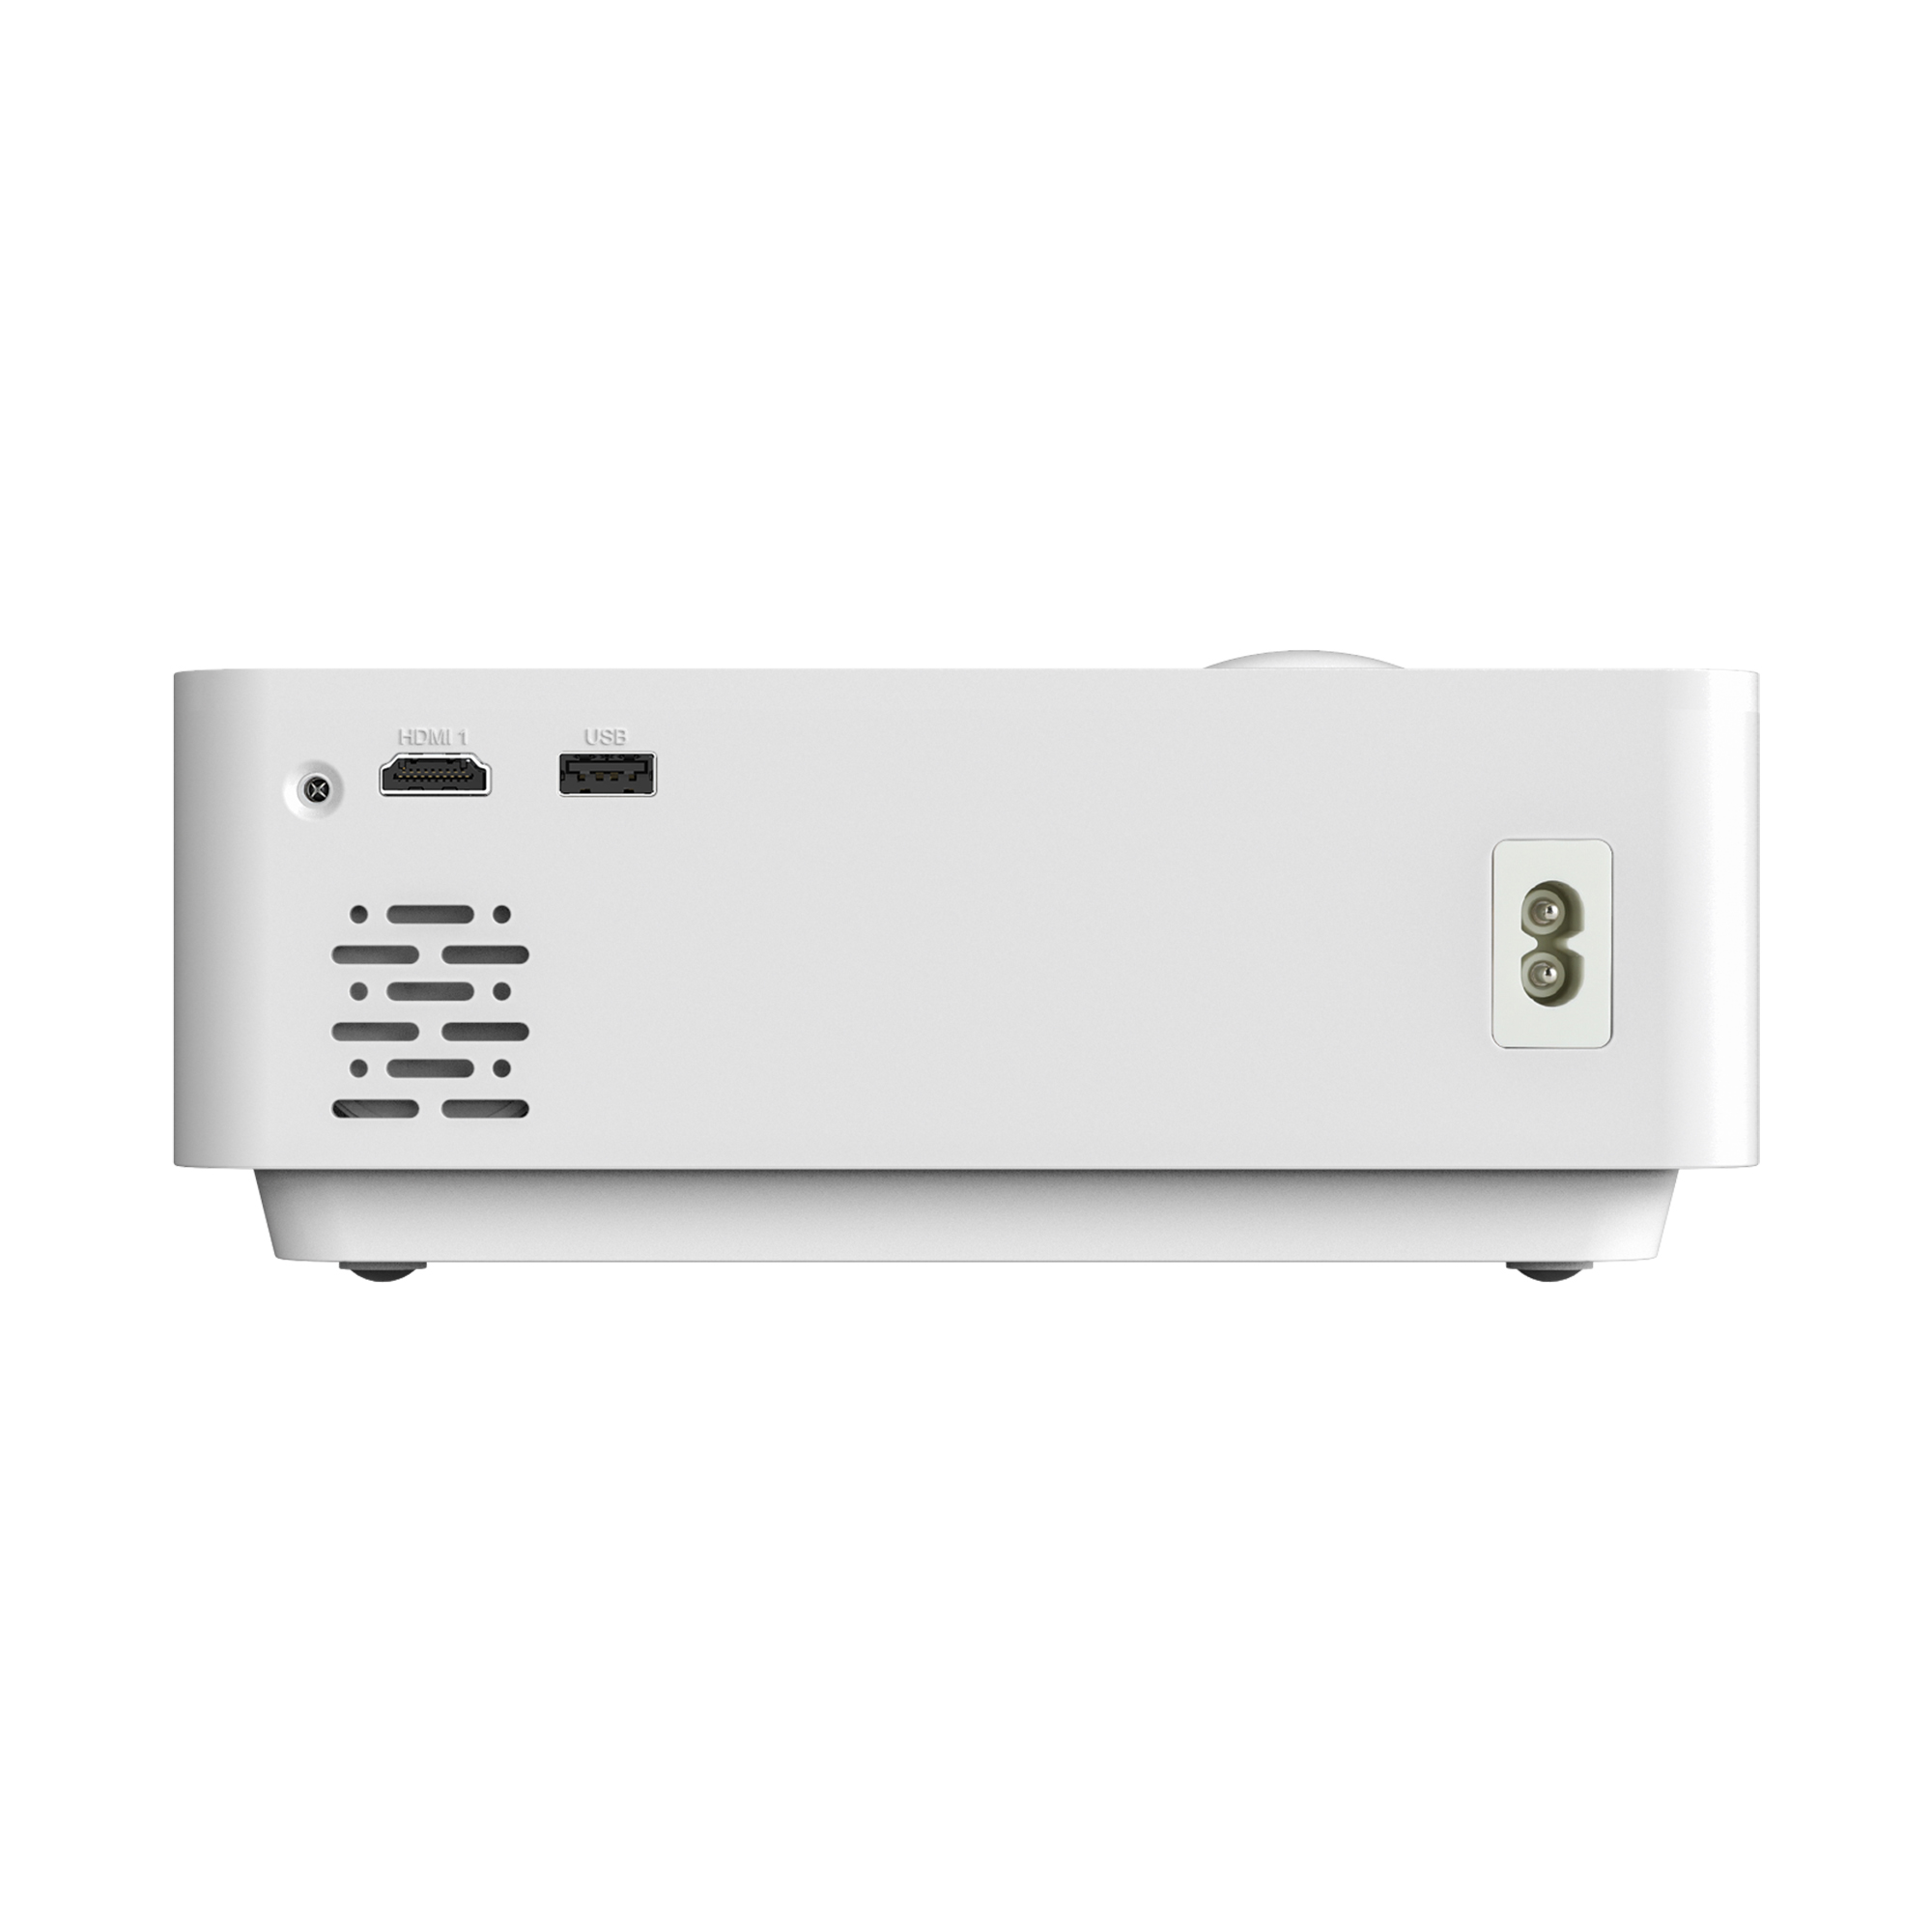 Bundle Wi-Fi LA 2500 VAGUE LV-HD340 Beamer(HD, Lumen)